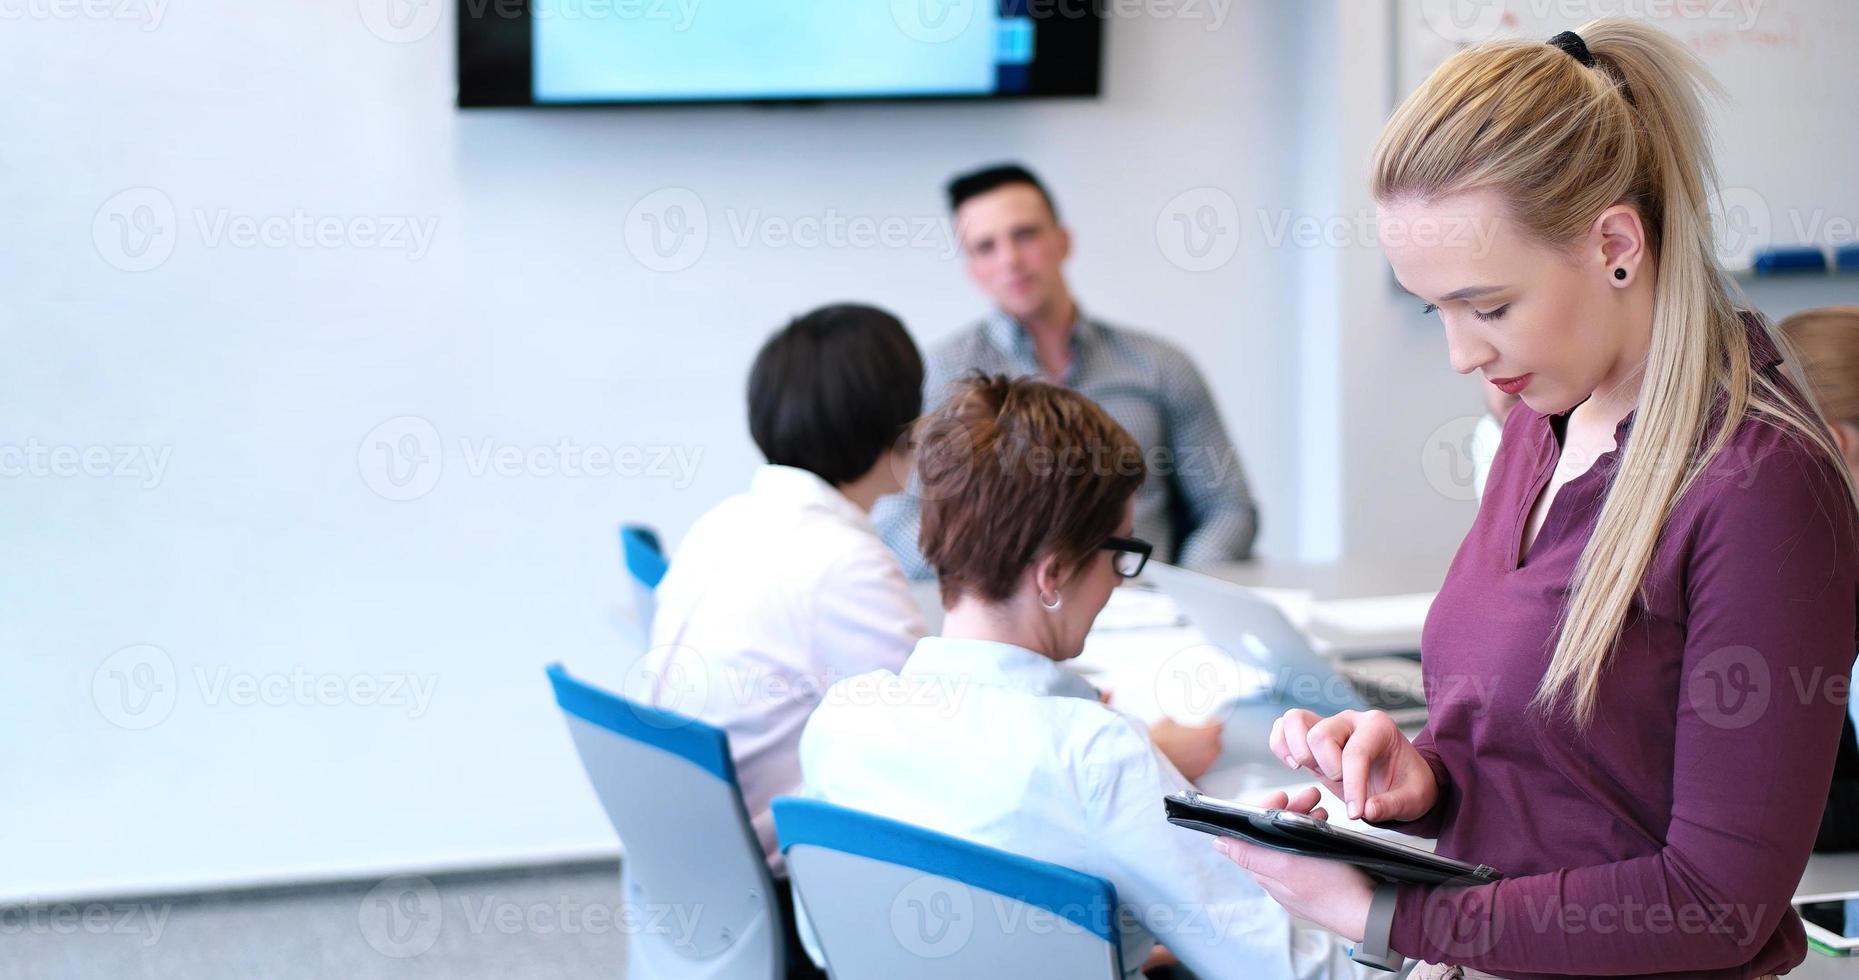 Söt affärskvinna använder sig av läsplatta i kontor byggnad under konferens foto